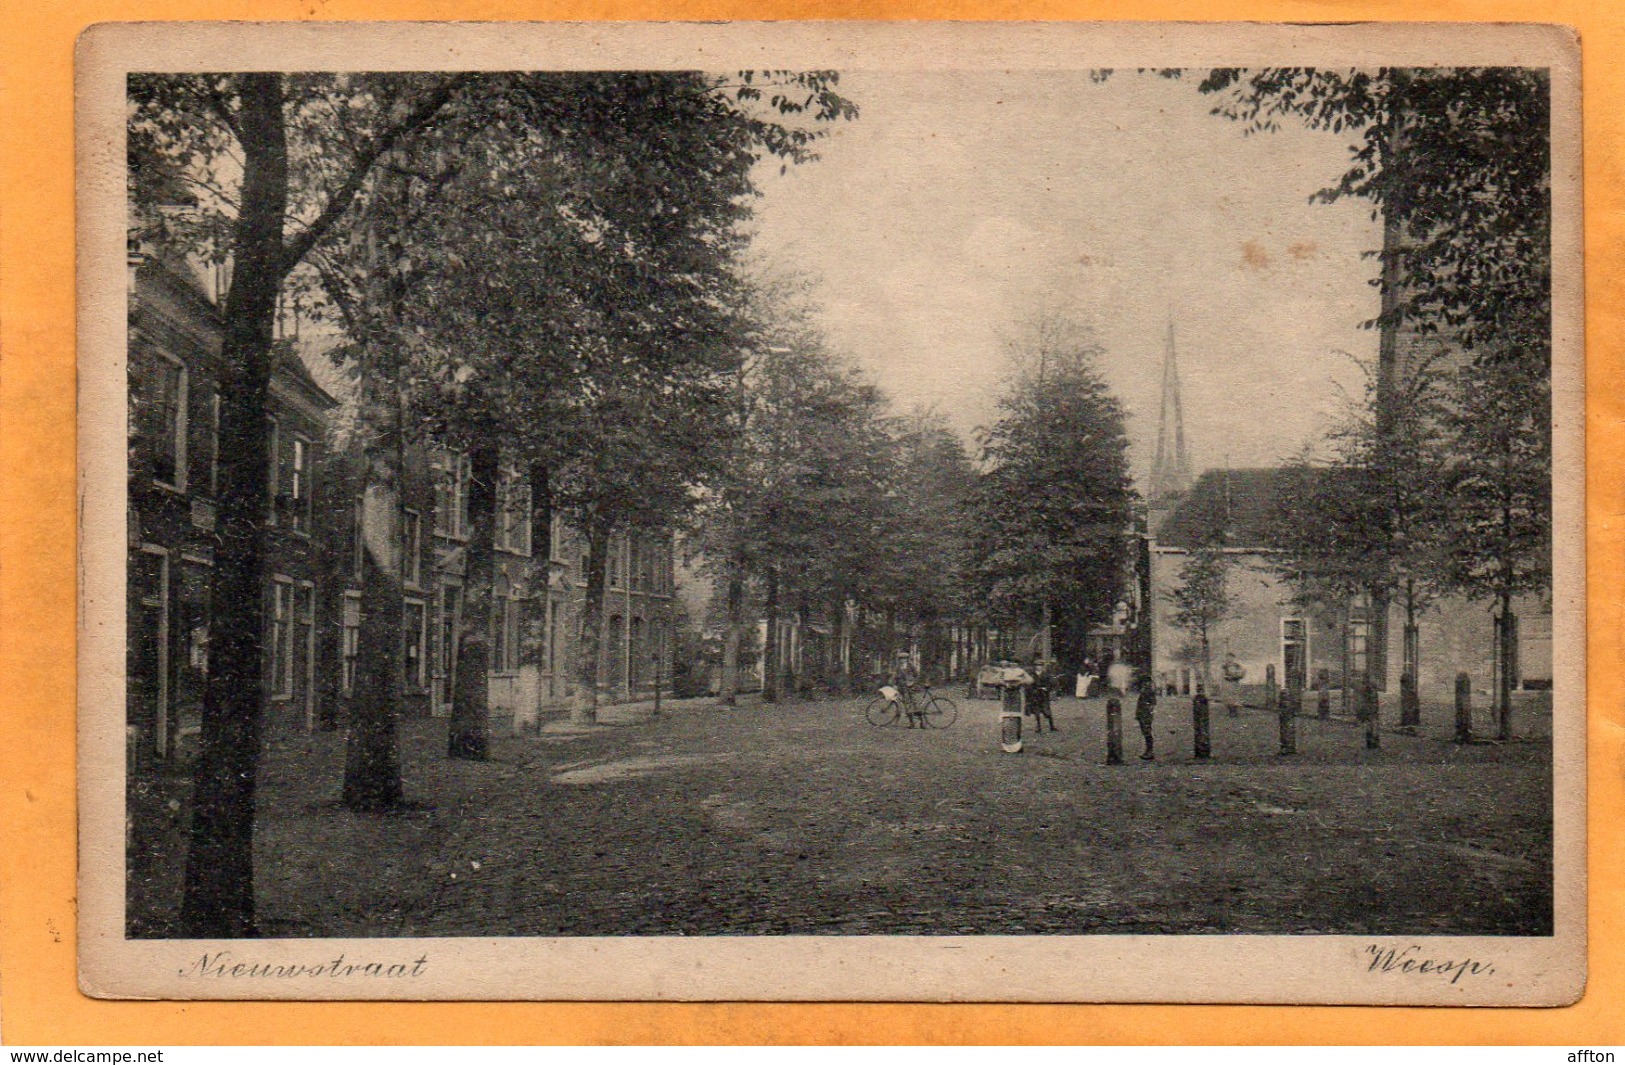 Weesp Netherlands 1908 Postcard - Weesp